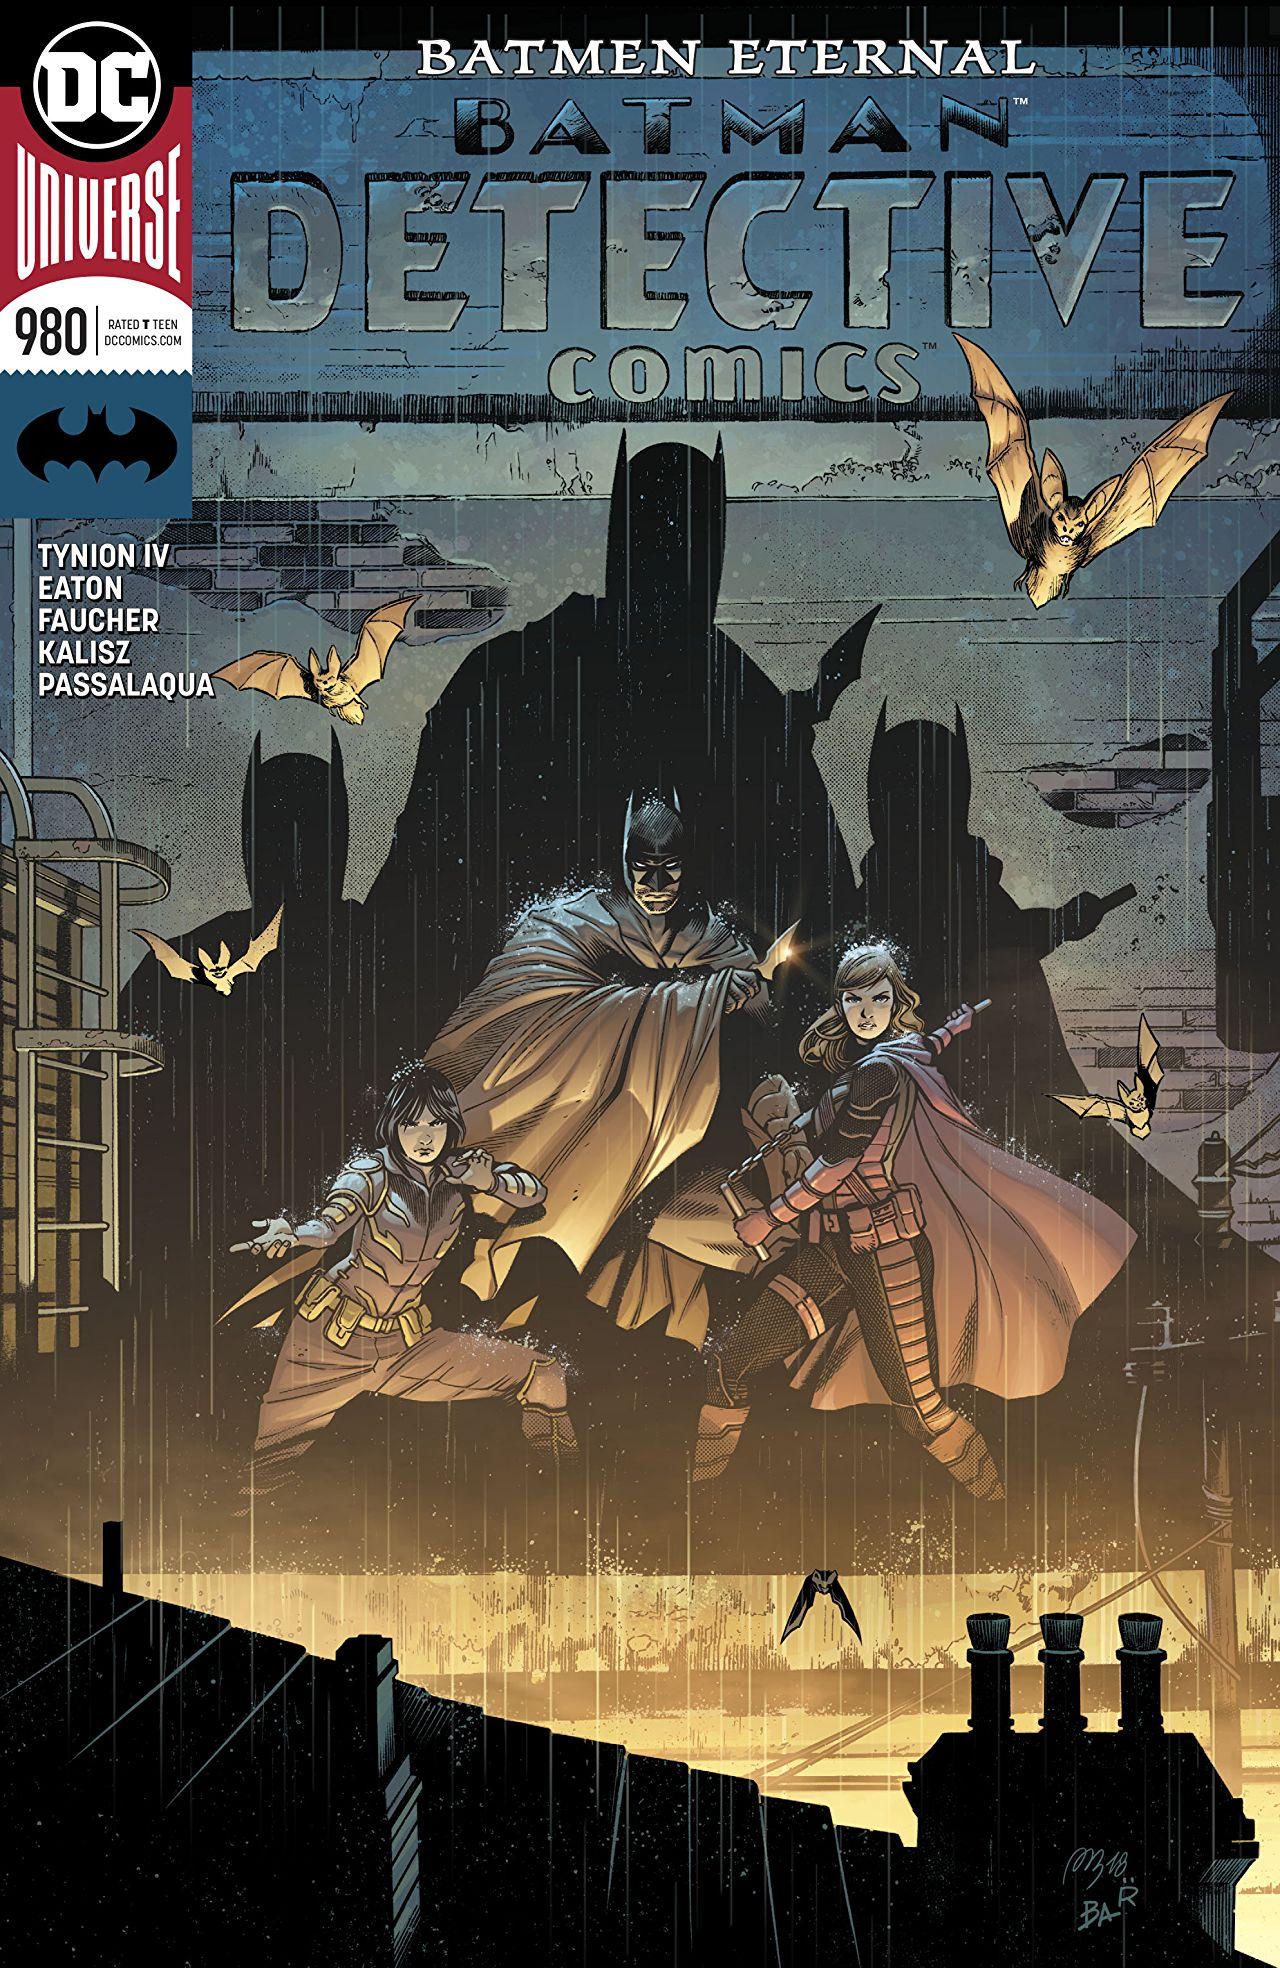 Detective Comics Vol. 1 #980